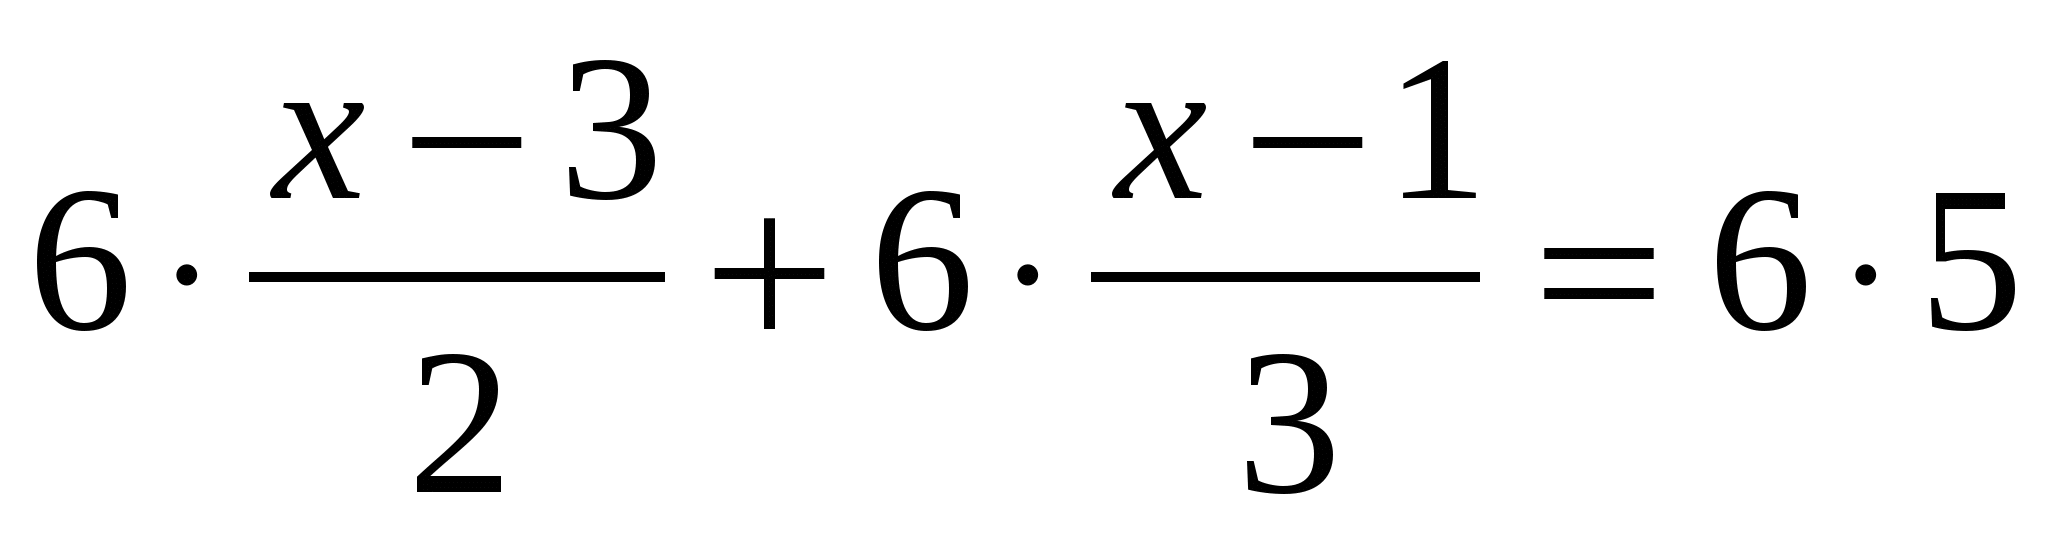 Практический материал к ГИА по математике для 9 класса по теме «Уравнения»